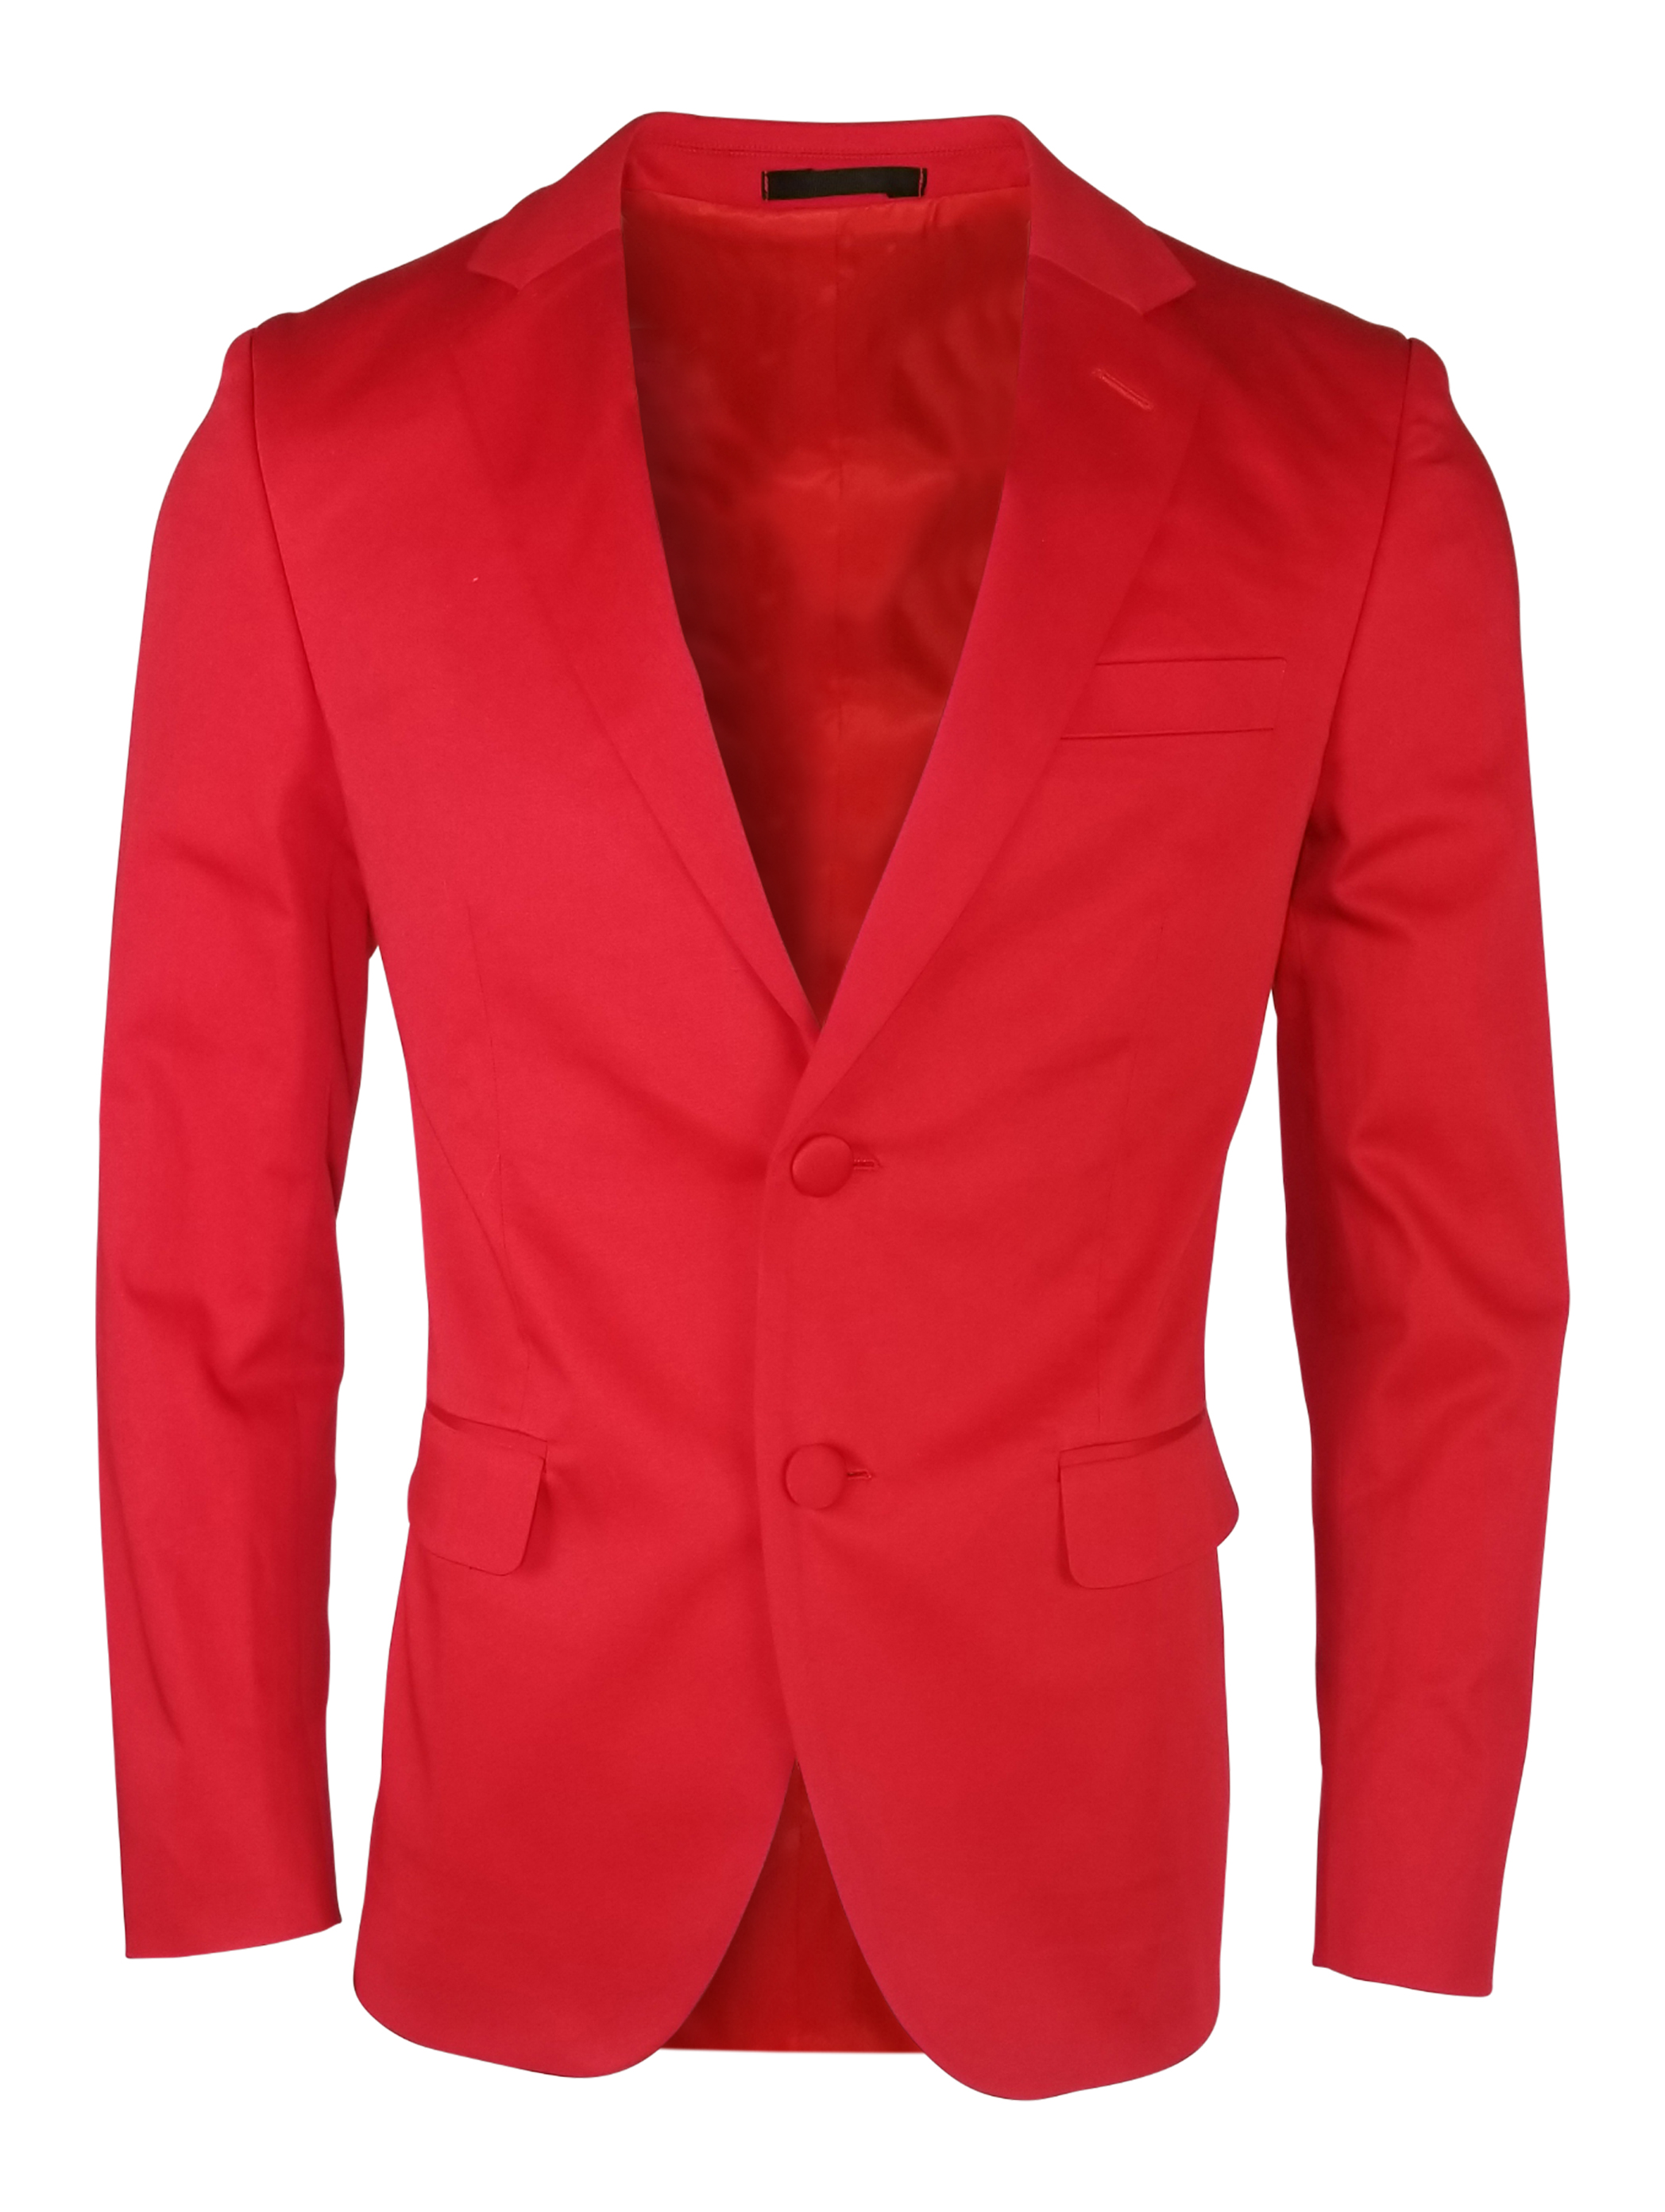 Men's Cotton Jacket - Red - Uniform Edit